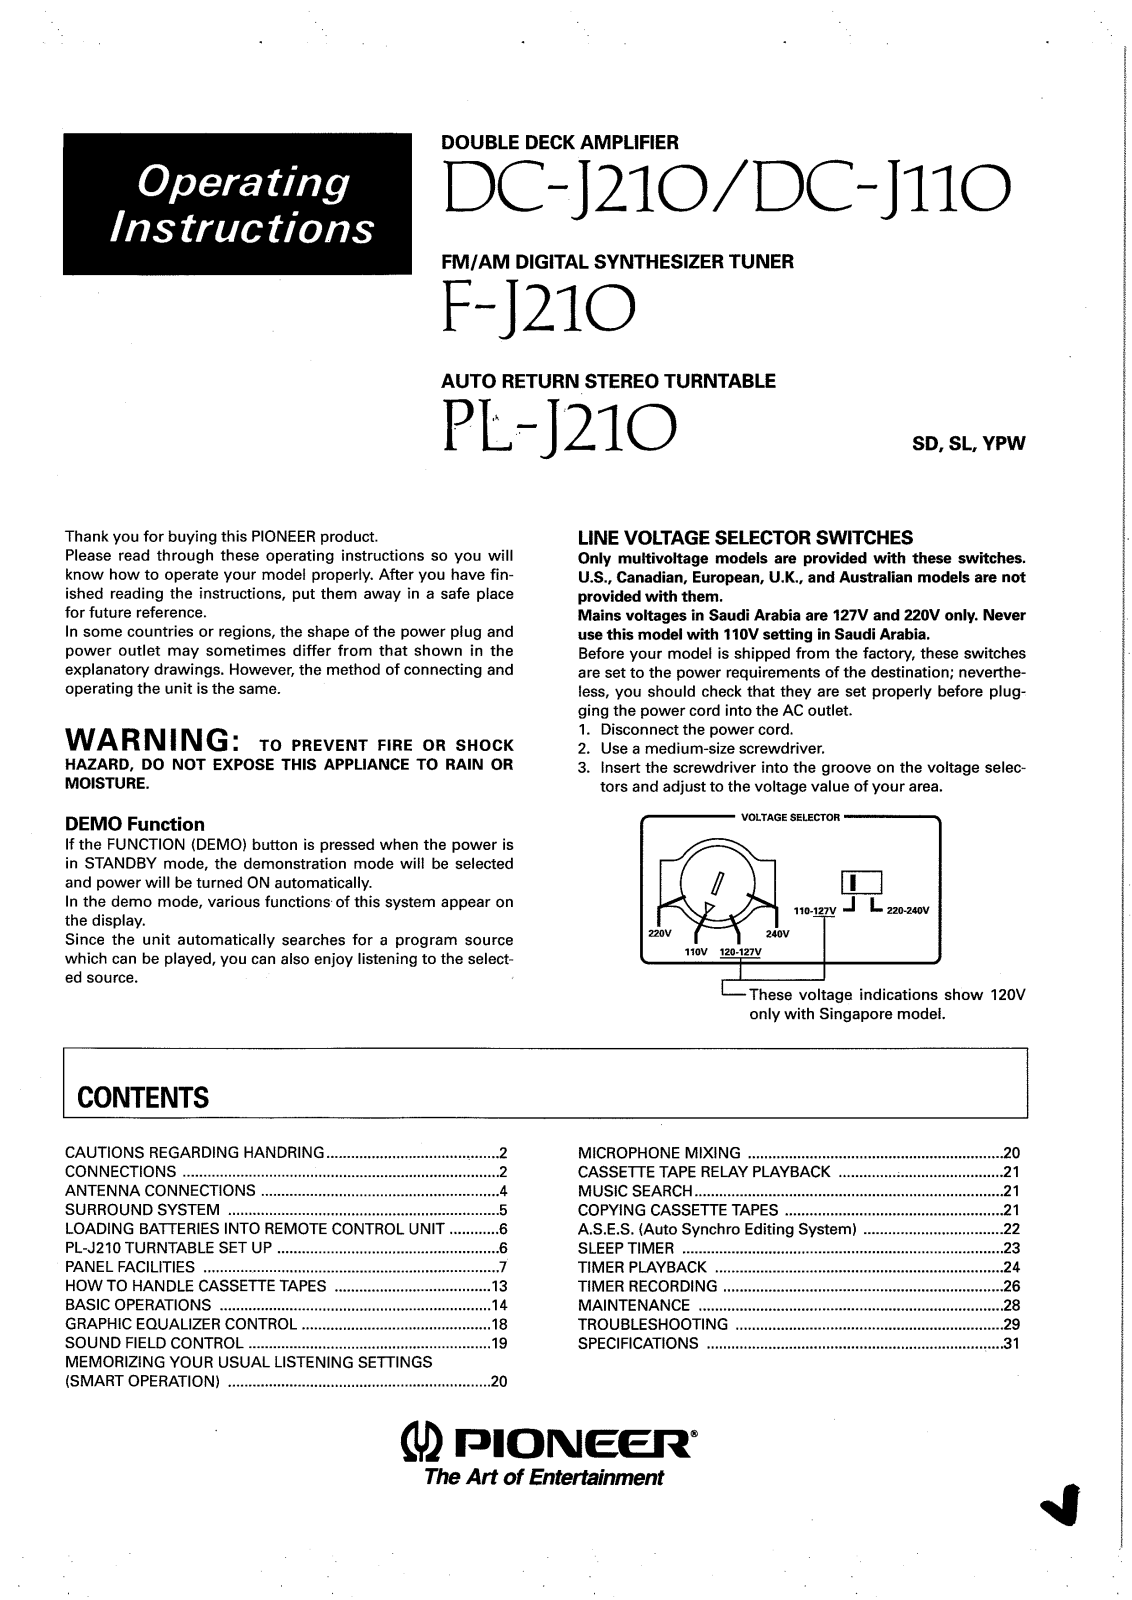 Pioneer PL-J210, F-J210, DC-J110, DC-J210 Manual